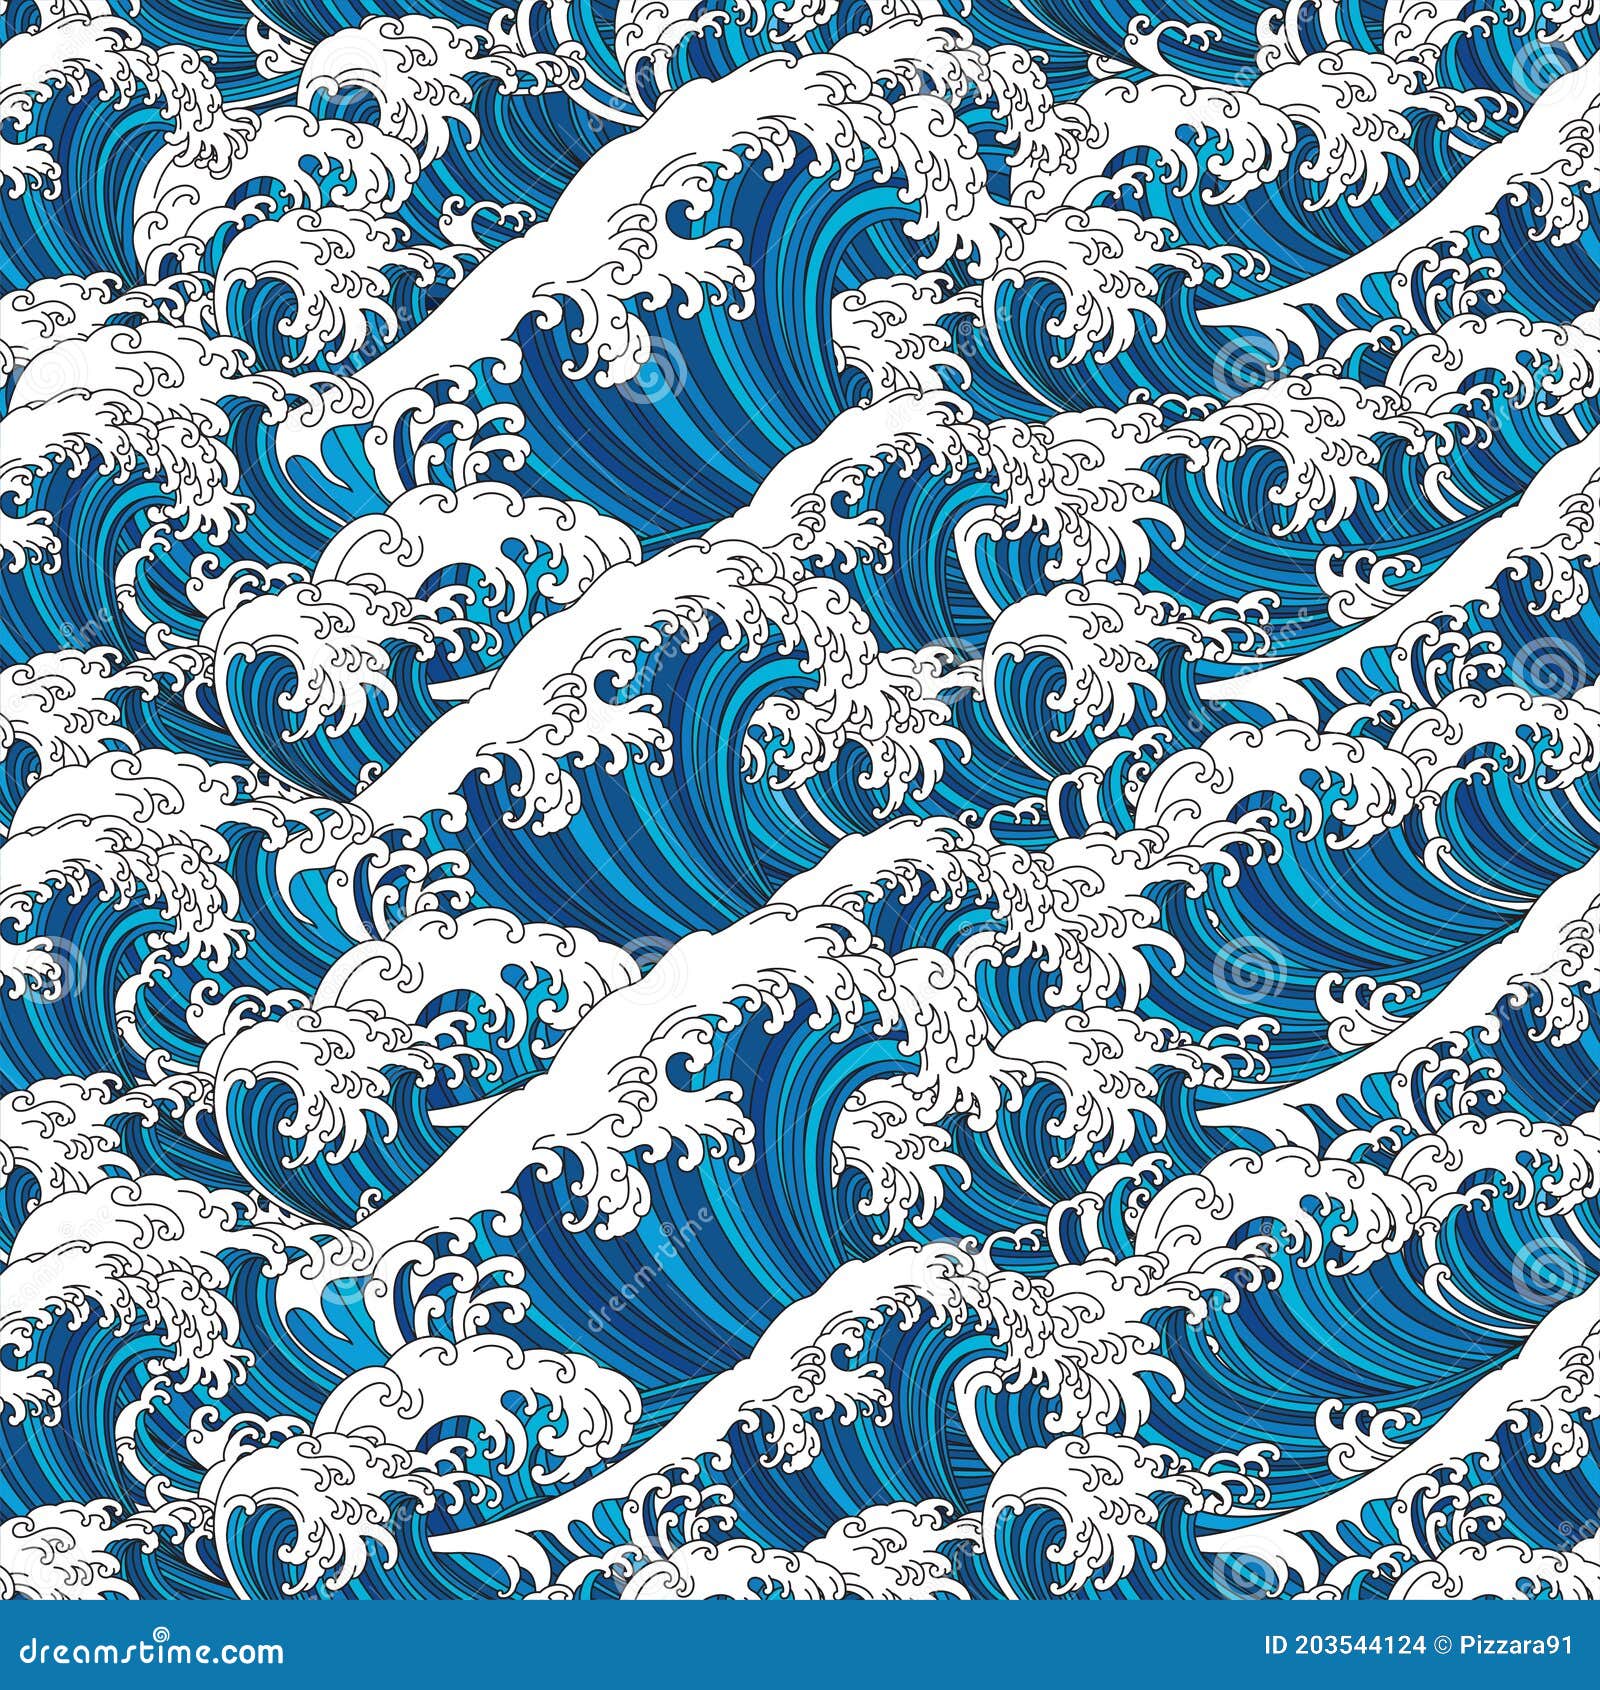 36780 Great Wave Wallpaper Images Stock Photos  Vectors  Shutterstock